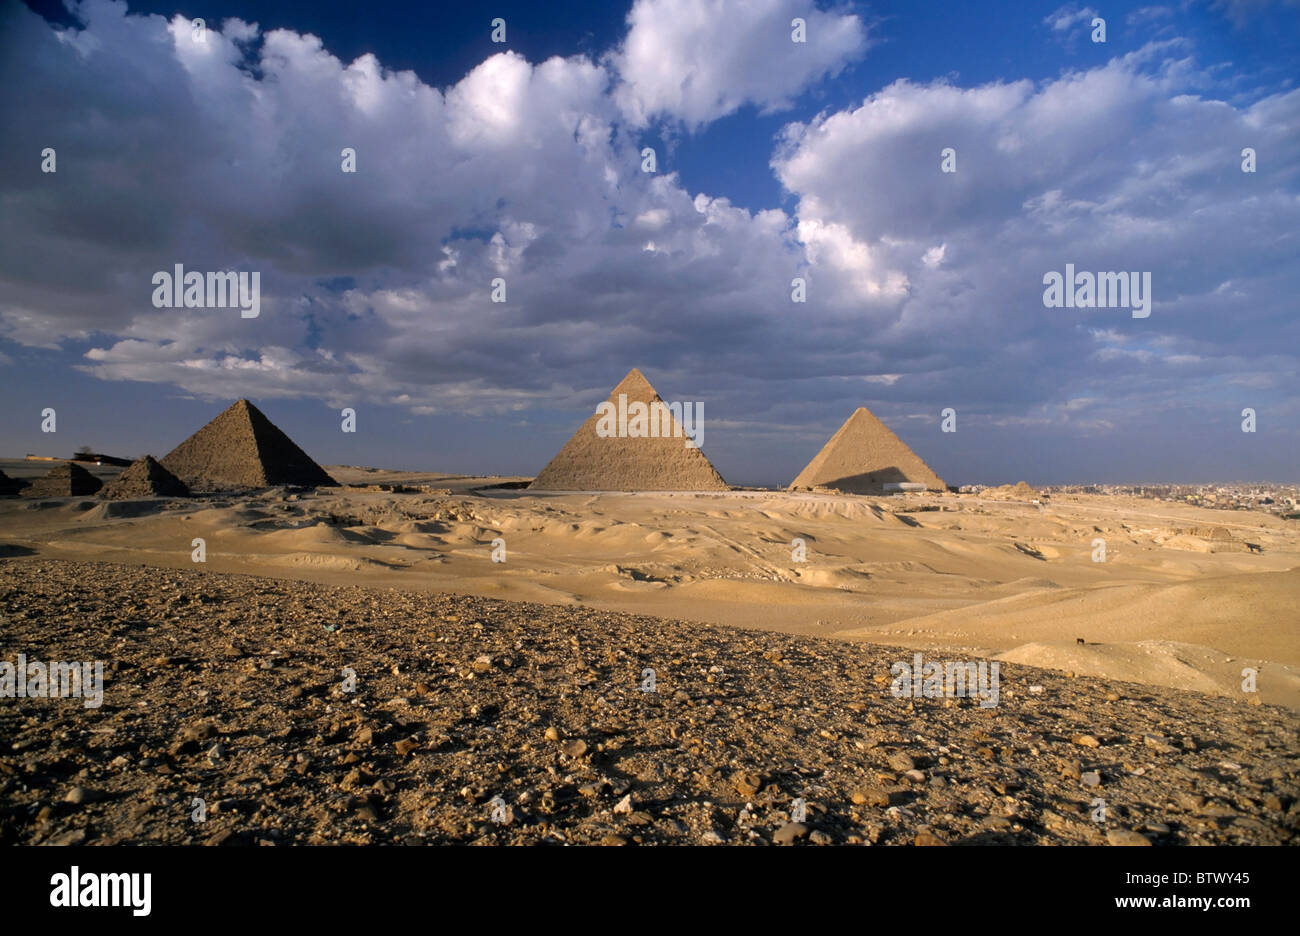 Vista de la pirámide de Khephren Mycerinus, La Pirámide y la Gran Pirámide de Giza, en El Cairo, las pirámides de Giza, en Egipto. Foto de stock